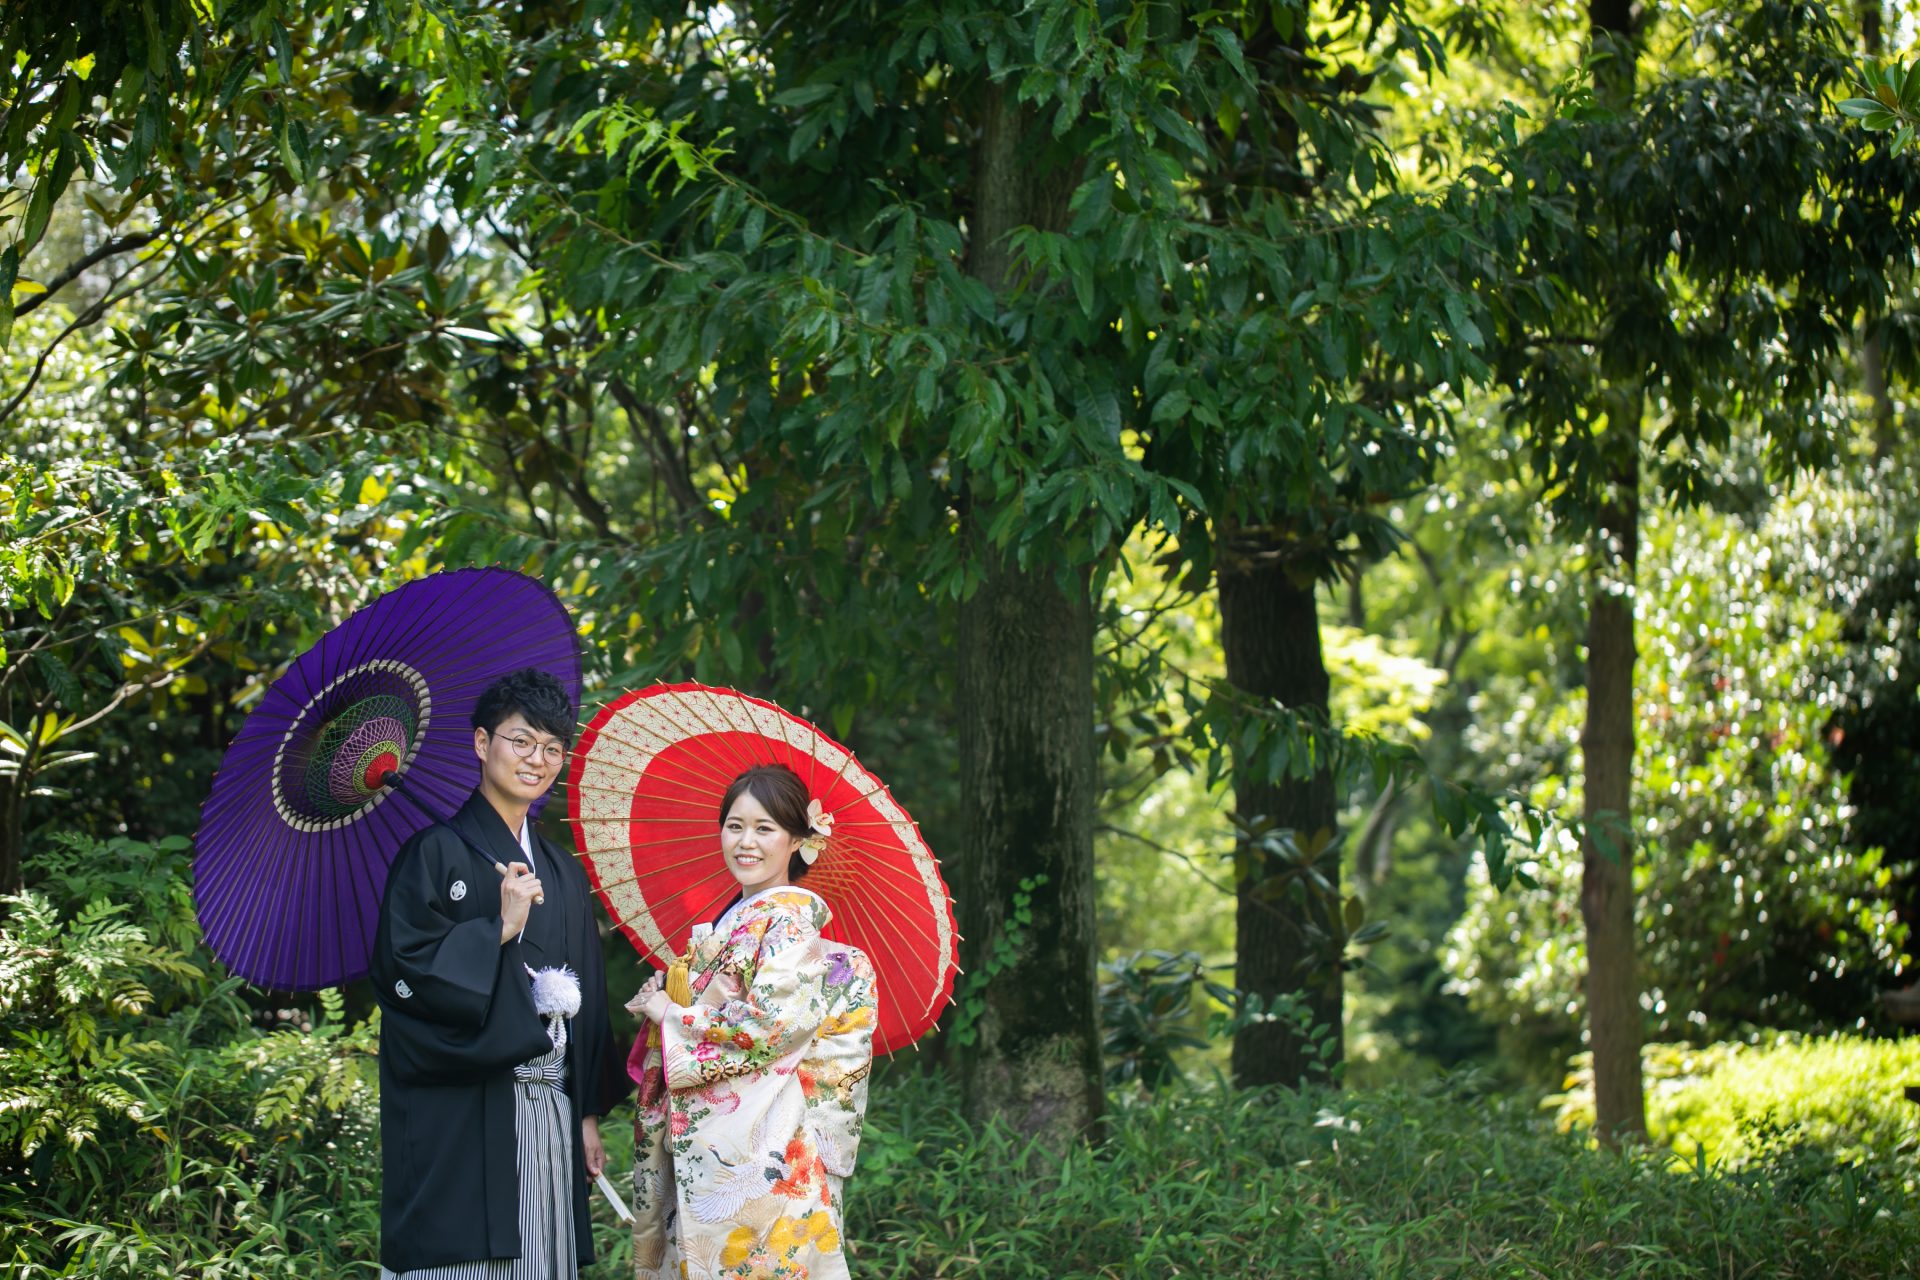 お二人で傘を使用し和装ならではの写真が自然たっぷりな会場に合う前撮りの写真